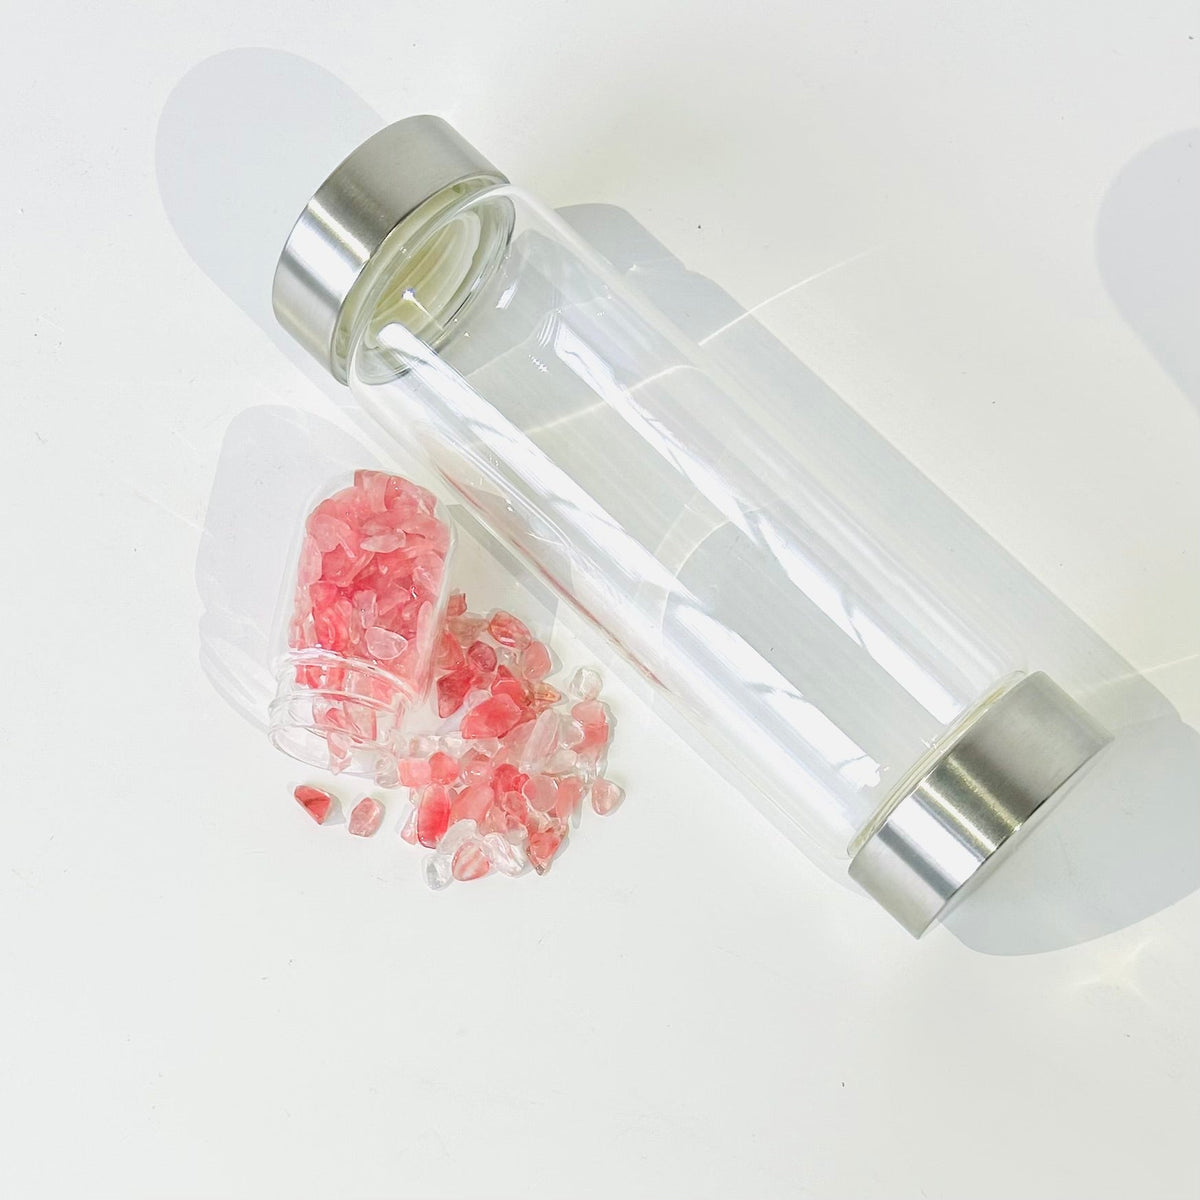 Gemstone Water Bottle, Fluorite